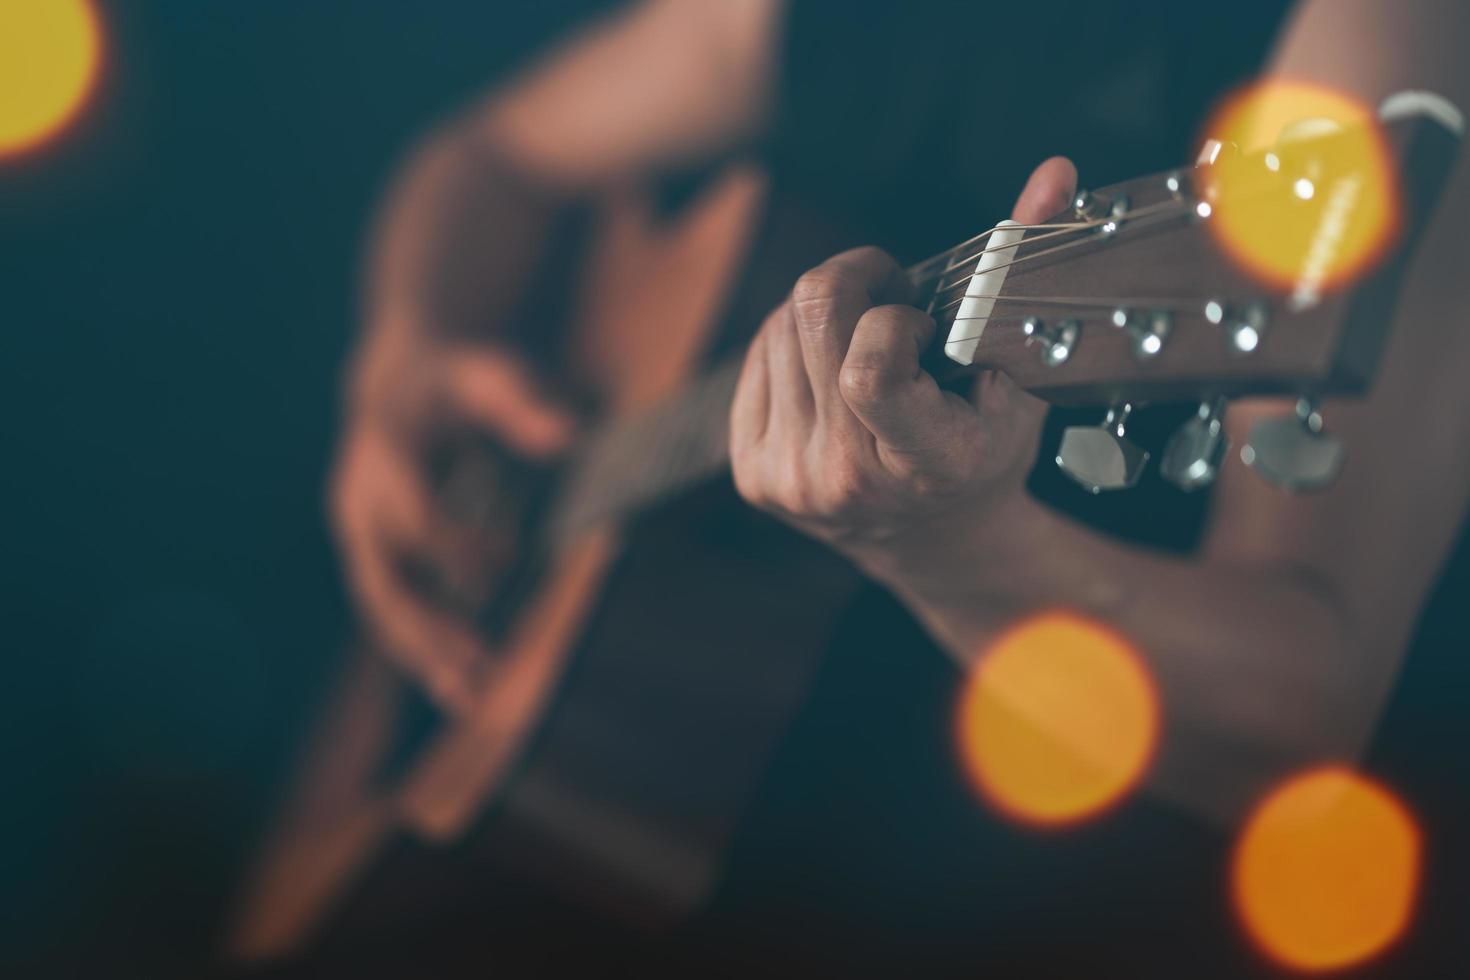 feche a mão do cara tocando violão. foto